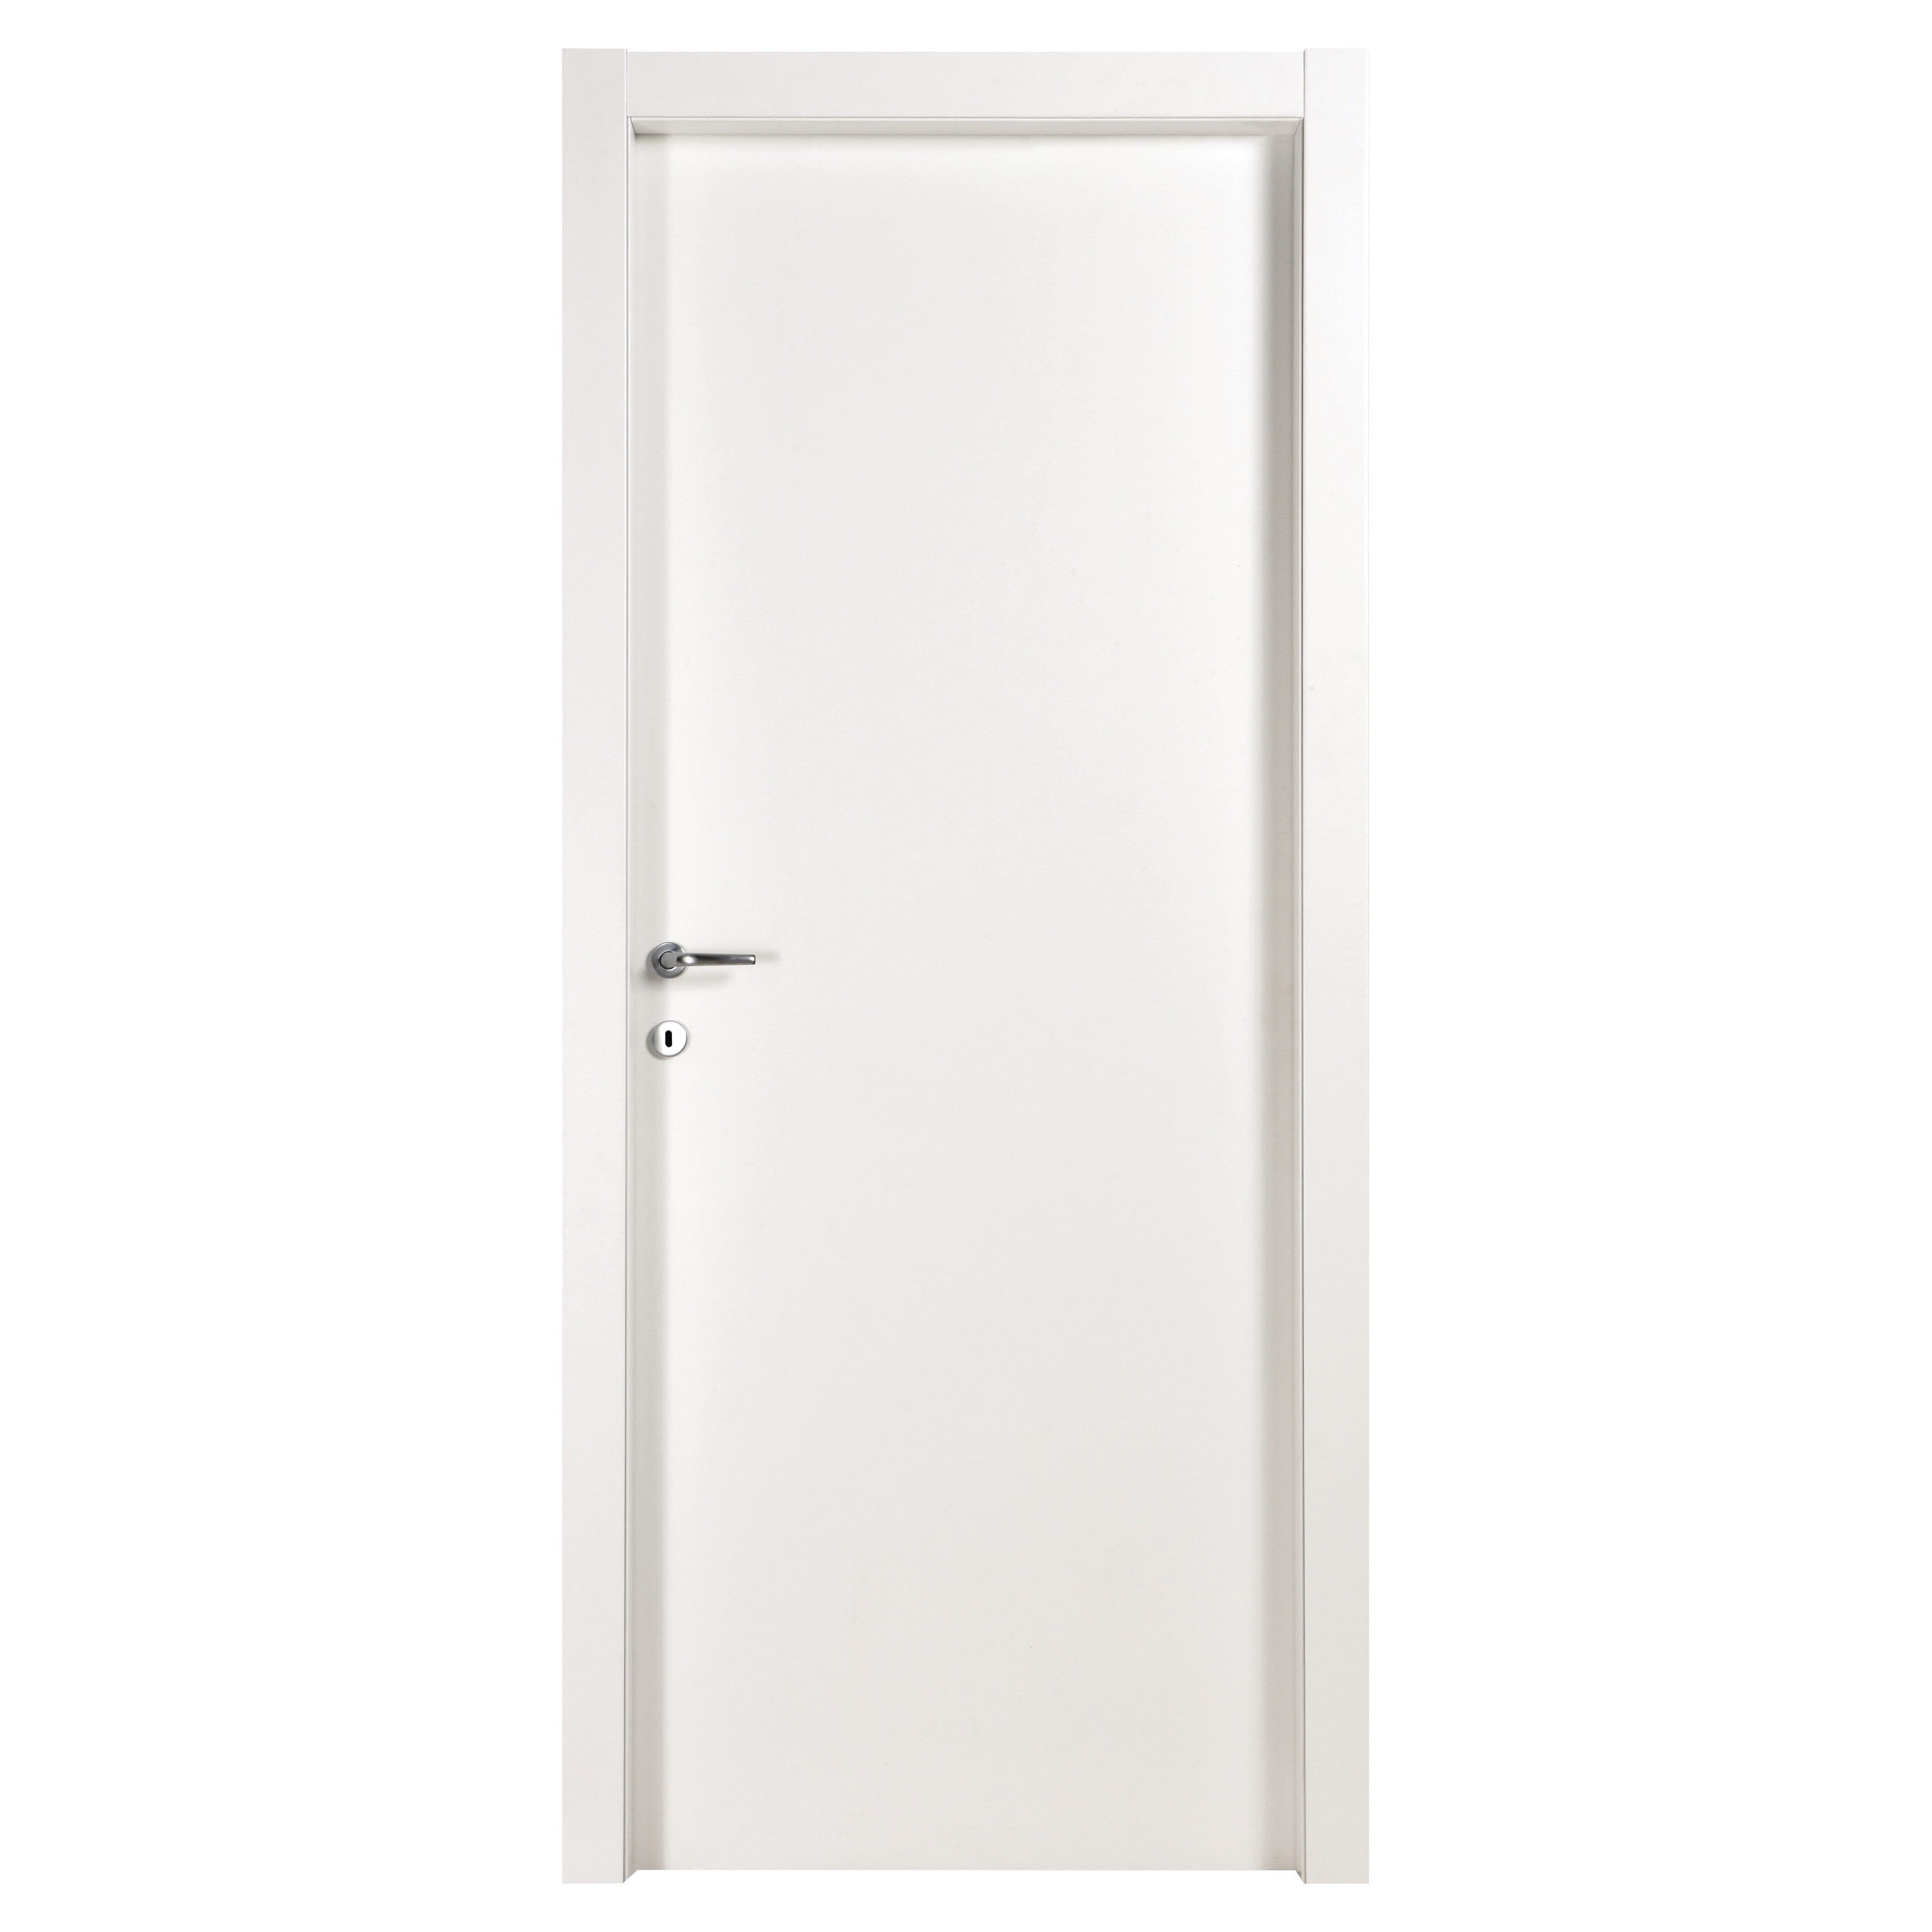 Porta da interno battente bianca new contract effebiquattro 90x210 cm (lxh) reversibile